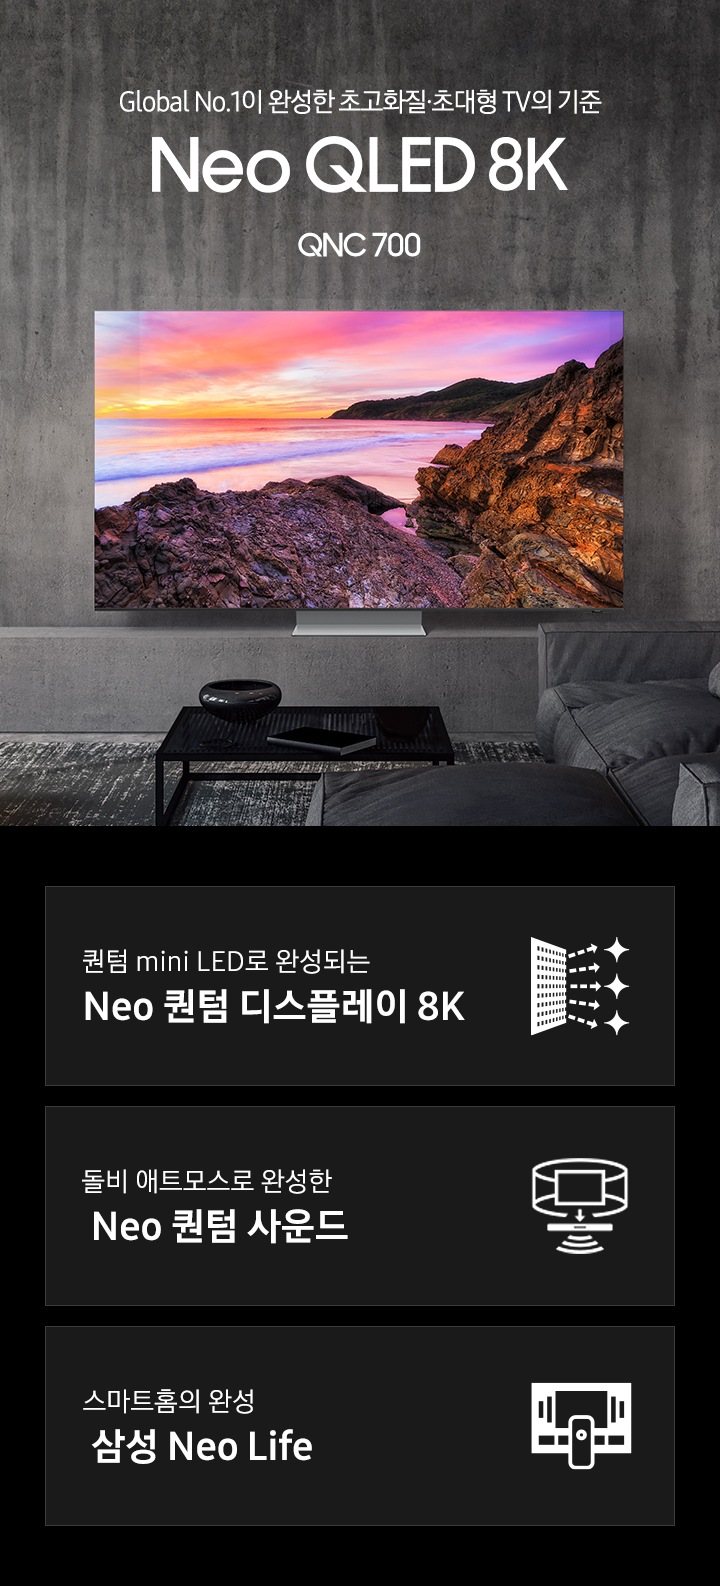 우드톤 인테리어의 거실과 우드 거실장 위에 TV가 놓여 있습니다. 스크린에는 보랏빛 하늘과 암벽,  파도가 보입니다. Global No.1이 완성한 초고화질.초대형 TV의 기준 Neo QLED 8K QNC 700 KV 입니다. 하단 3 POD 에는 퀀텀 mini LED로 완성되는 Neo 퀀텀 디스플레이 8K 문구와 반짝이는 디스플레이 아이콘, 돌비 애트모스로 완성한 Neo 퀀텀 사운드 문구와 TV 아이콘에서 사운드 음파를 표현한 아이콘, 스마트홈의 완성 삼성 Neo Life 문구와 리모컨과 TV를 표현한 아이콘이 있습니다.